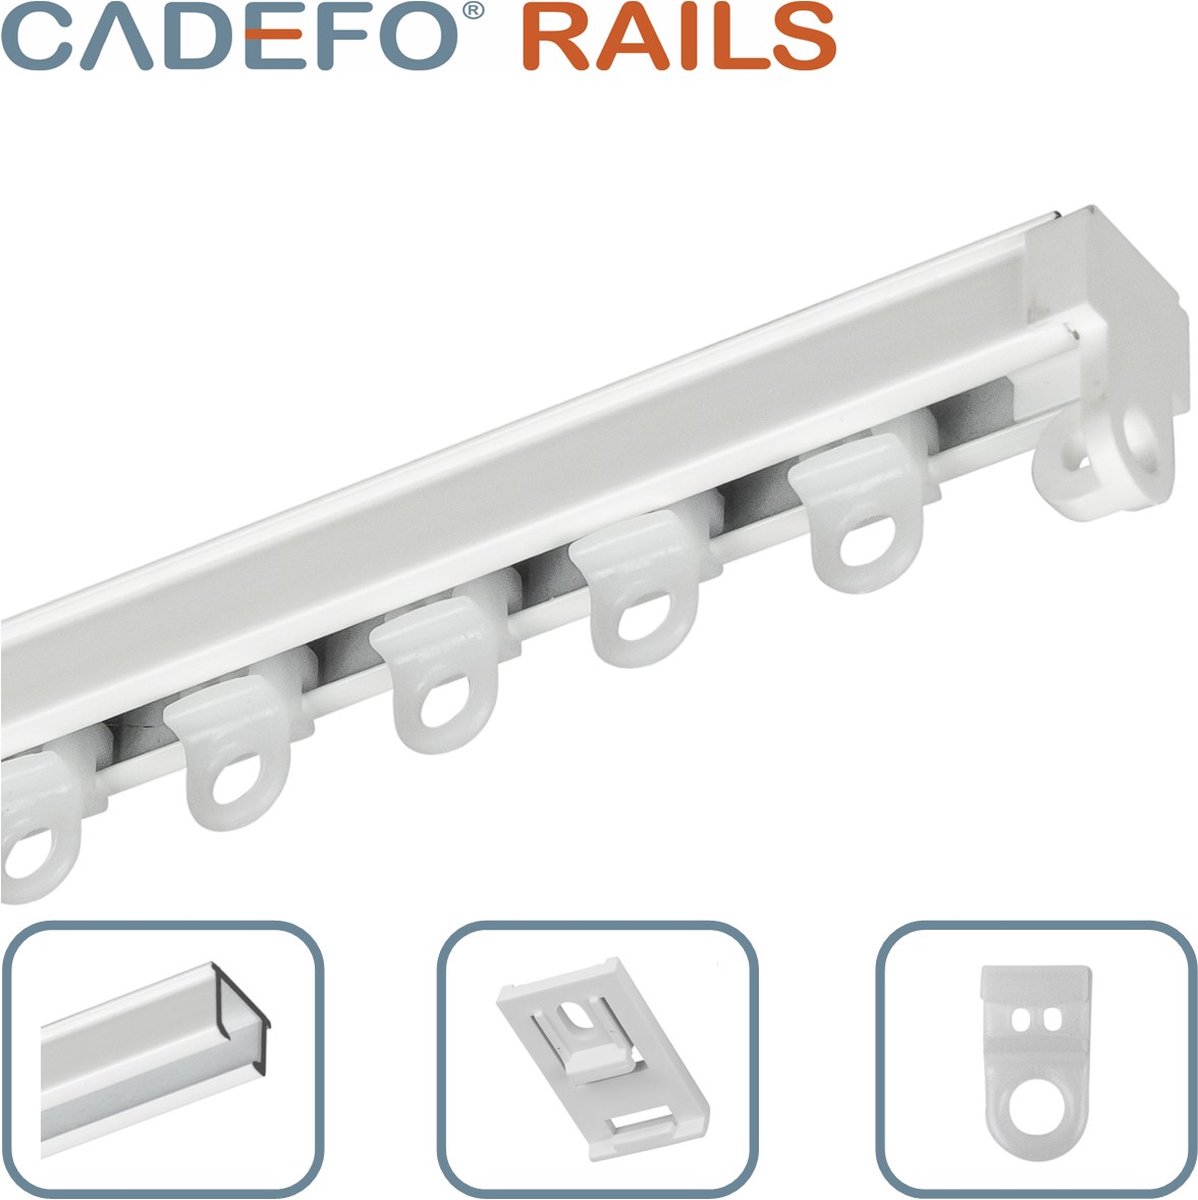 CADEFO RAILS (351 - 400 cm) Gordijnrails - Compleet op maat! - UIT 1 STUK - Leverbaar tot 6 meter - Plafondbevestiging - Lengte 392 cm